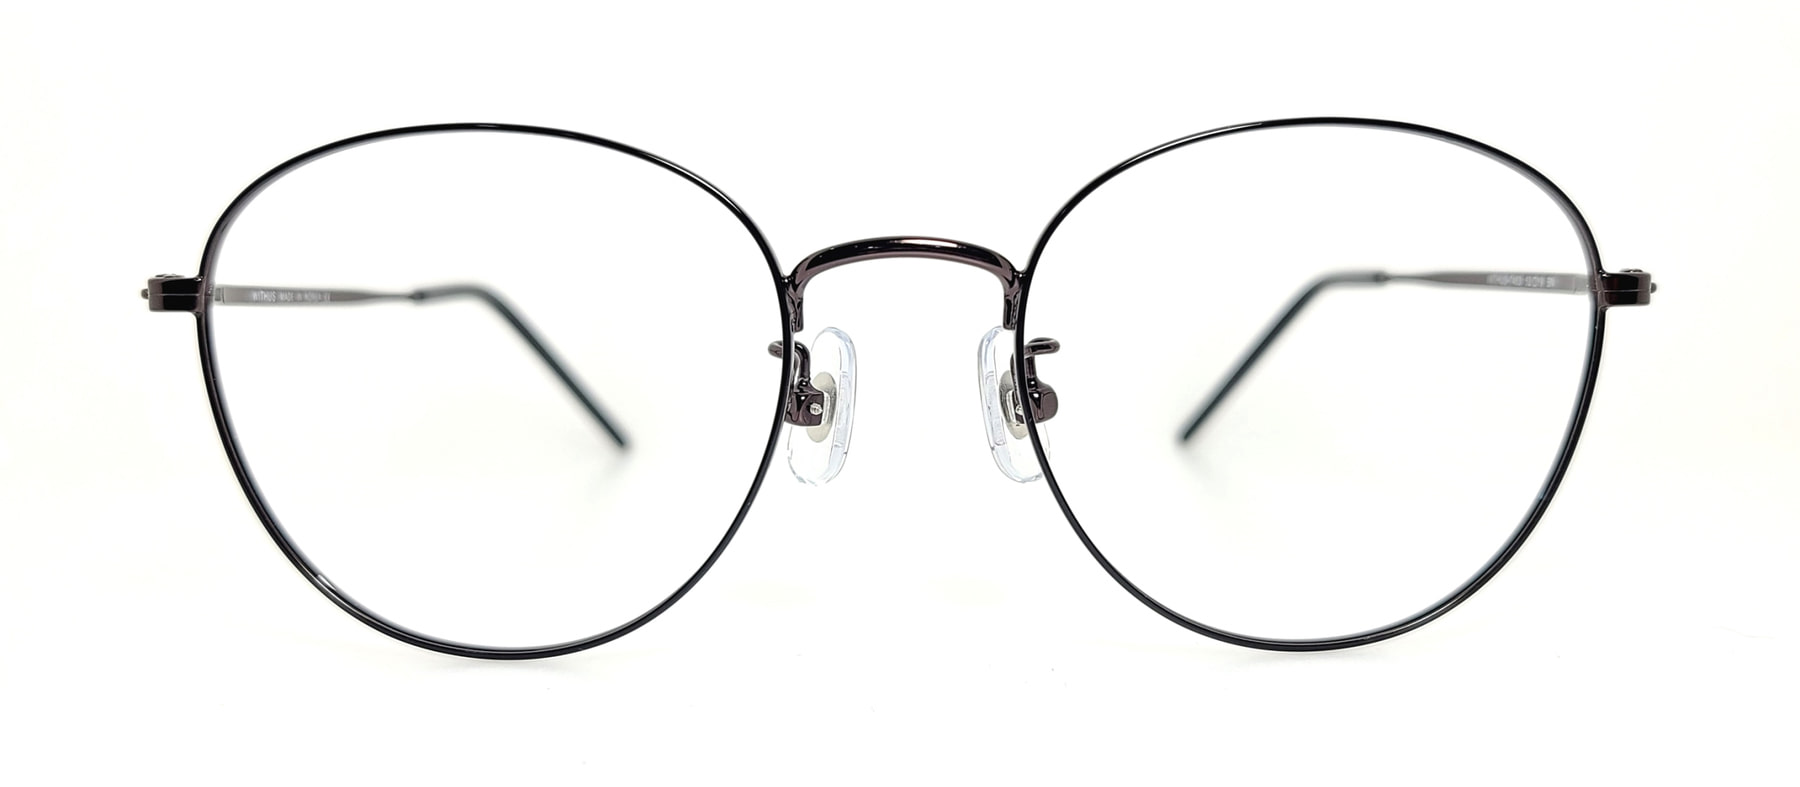 WITHUS-7453, Korean glasses, sunglasses, eyeglasses, glasses